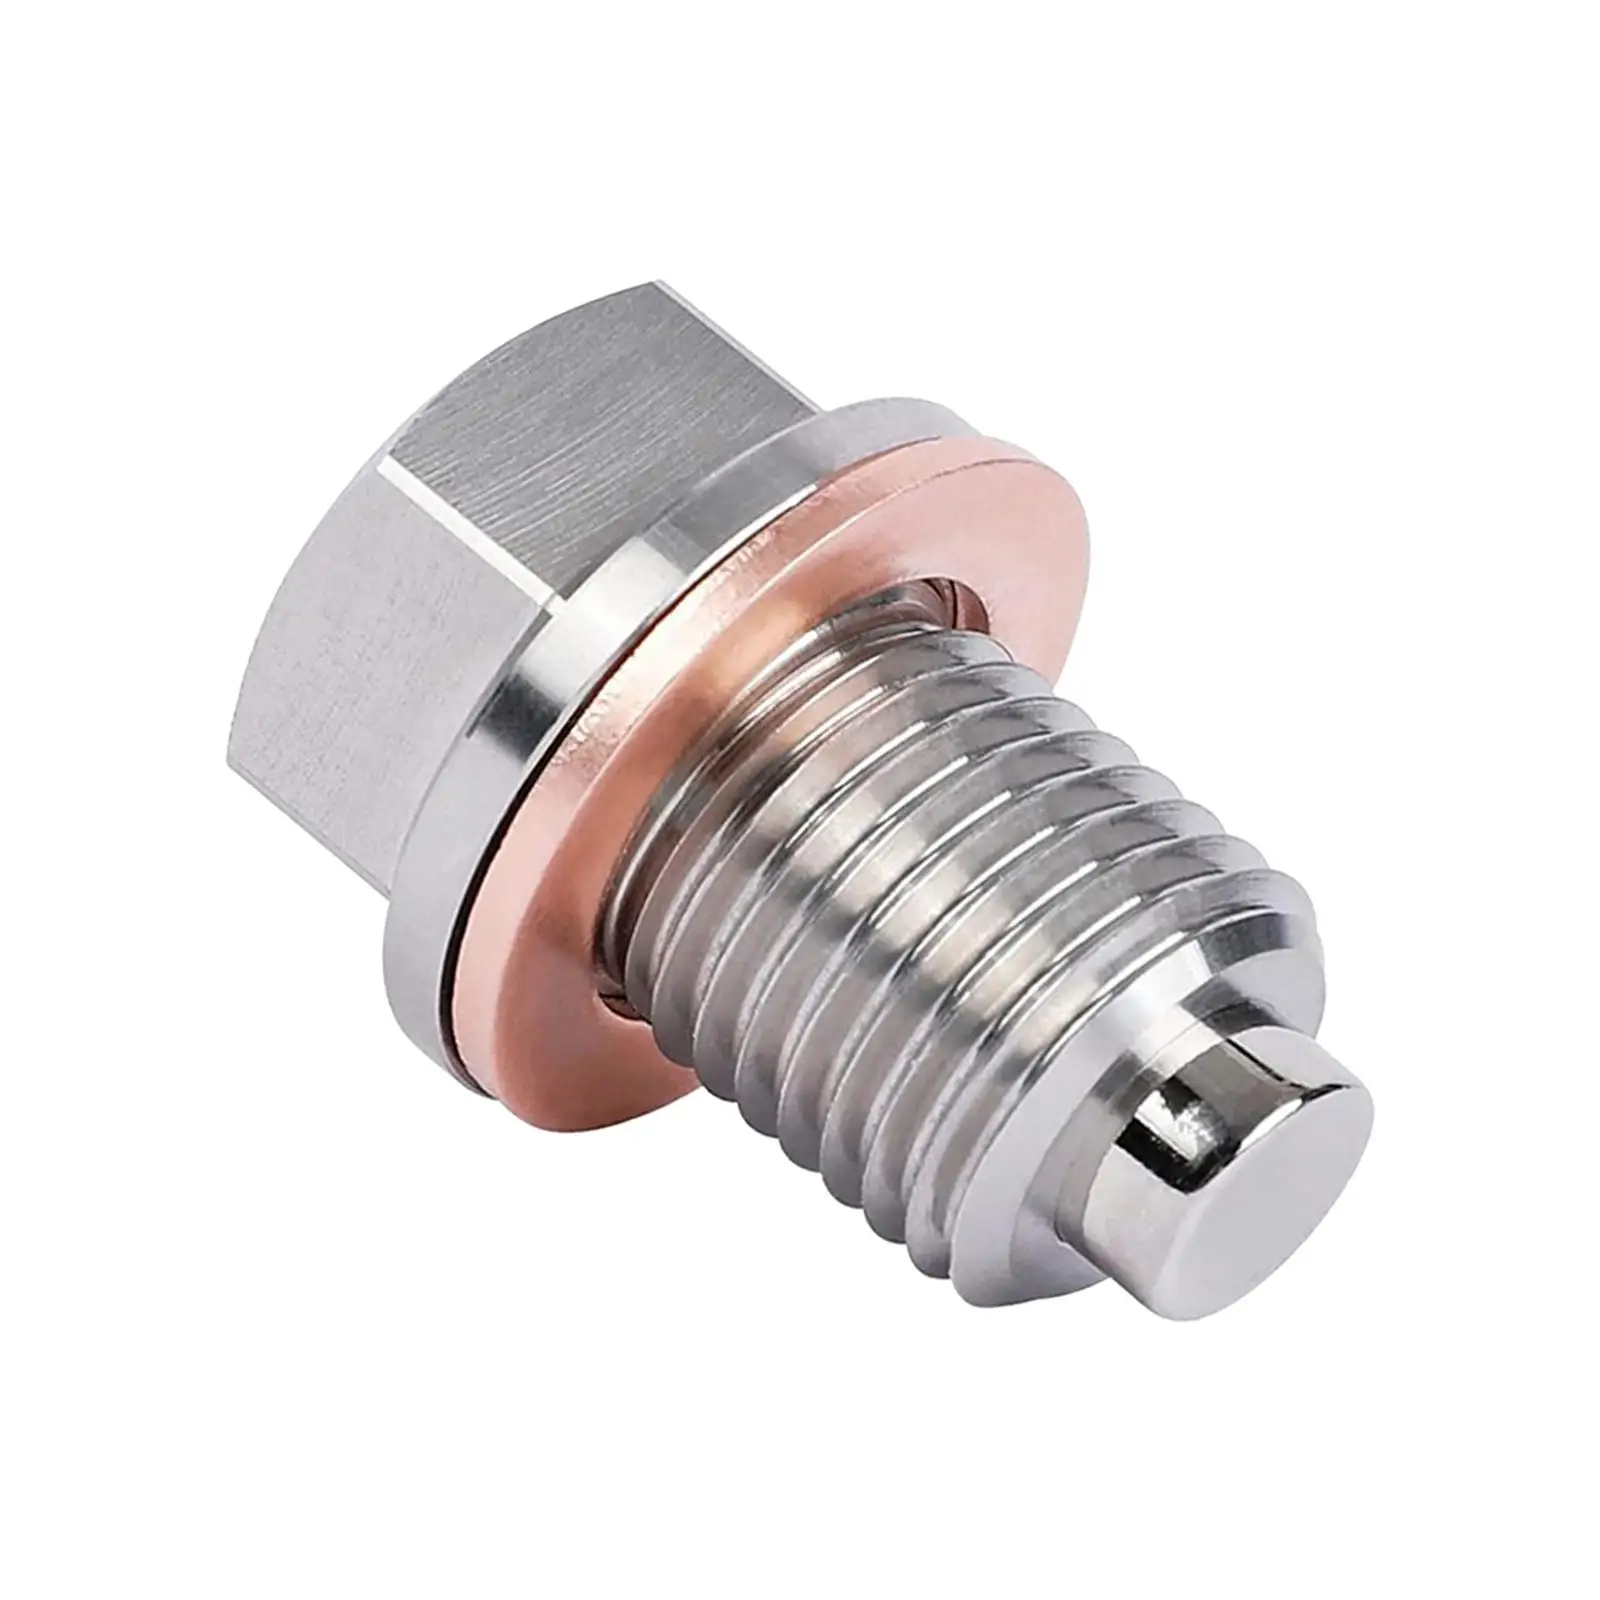 Oil Pan Drain Plug M12x1.5 Accessories Replace Parts Neodymium Magnet